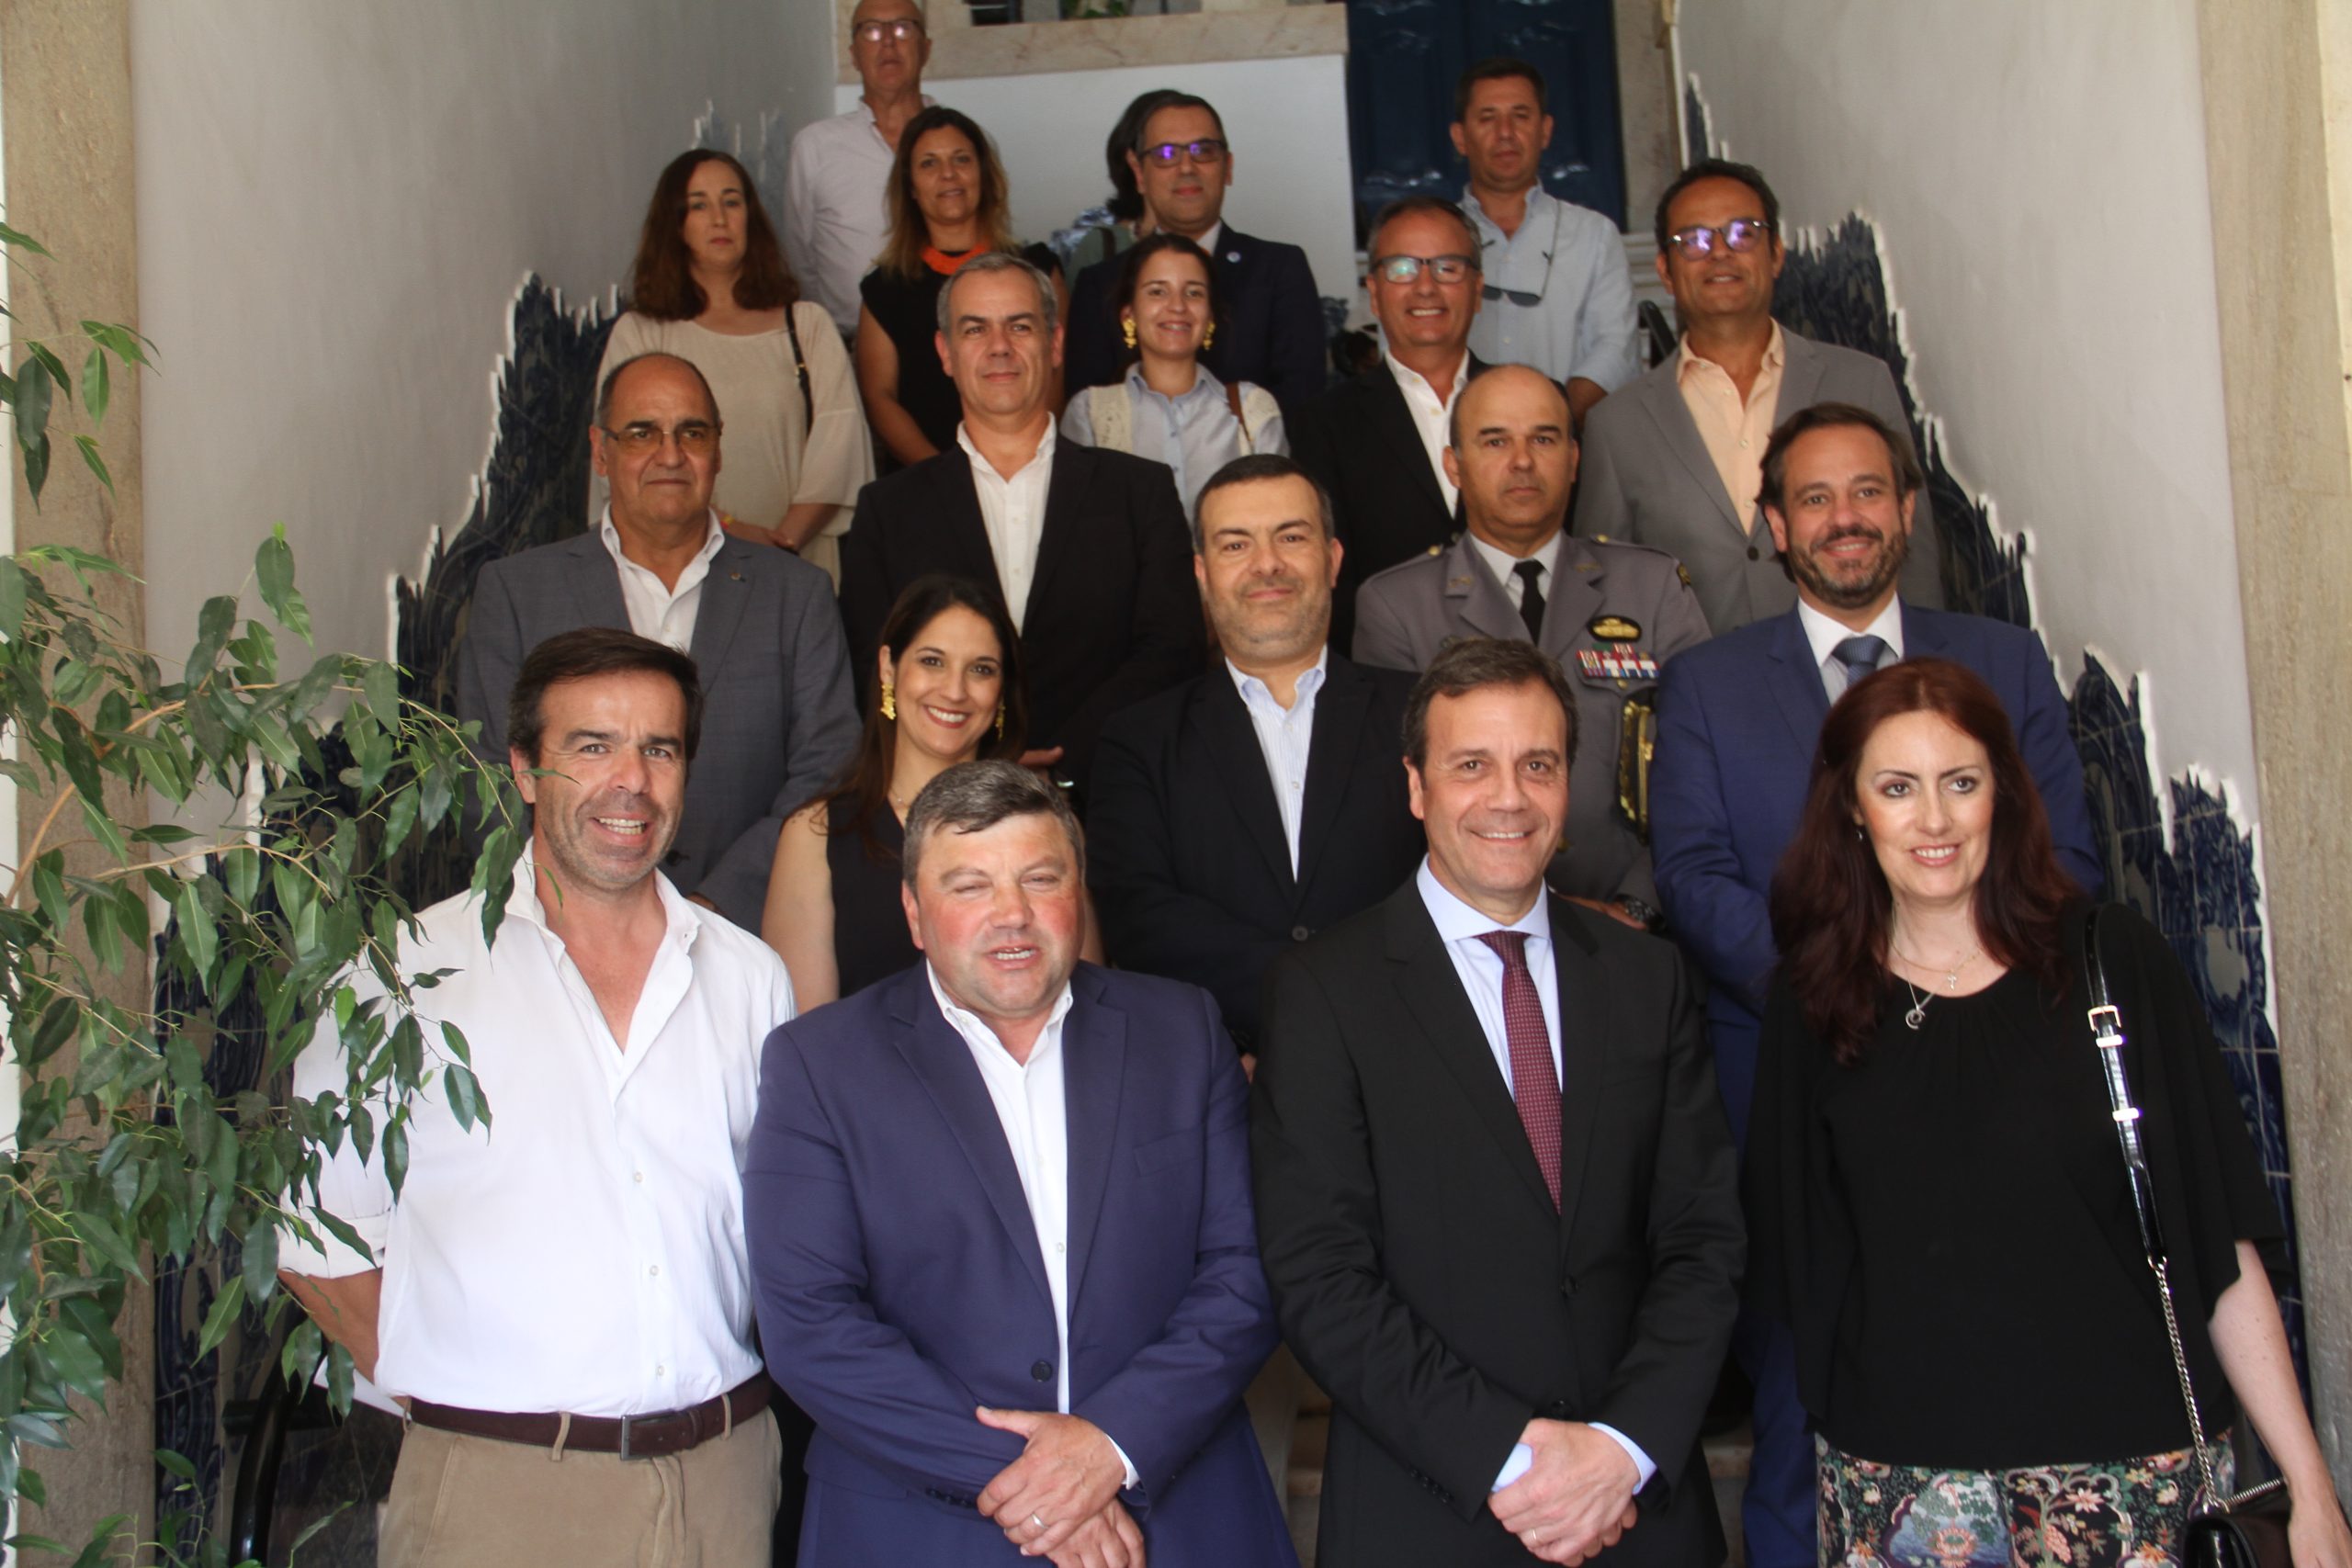 La apertura del espacio Cowork en Vila Viçosa destaca la importancia de las alianzas intermunicipales, dice el Secretario de Estado.